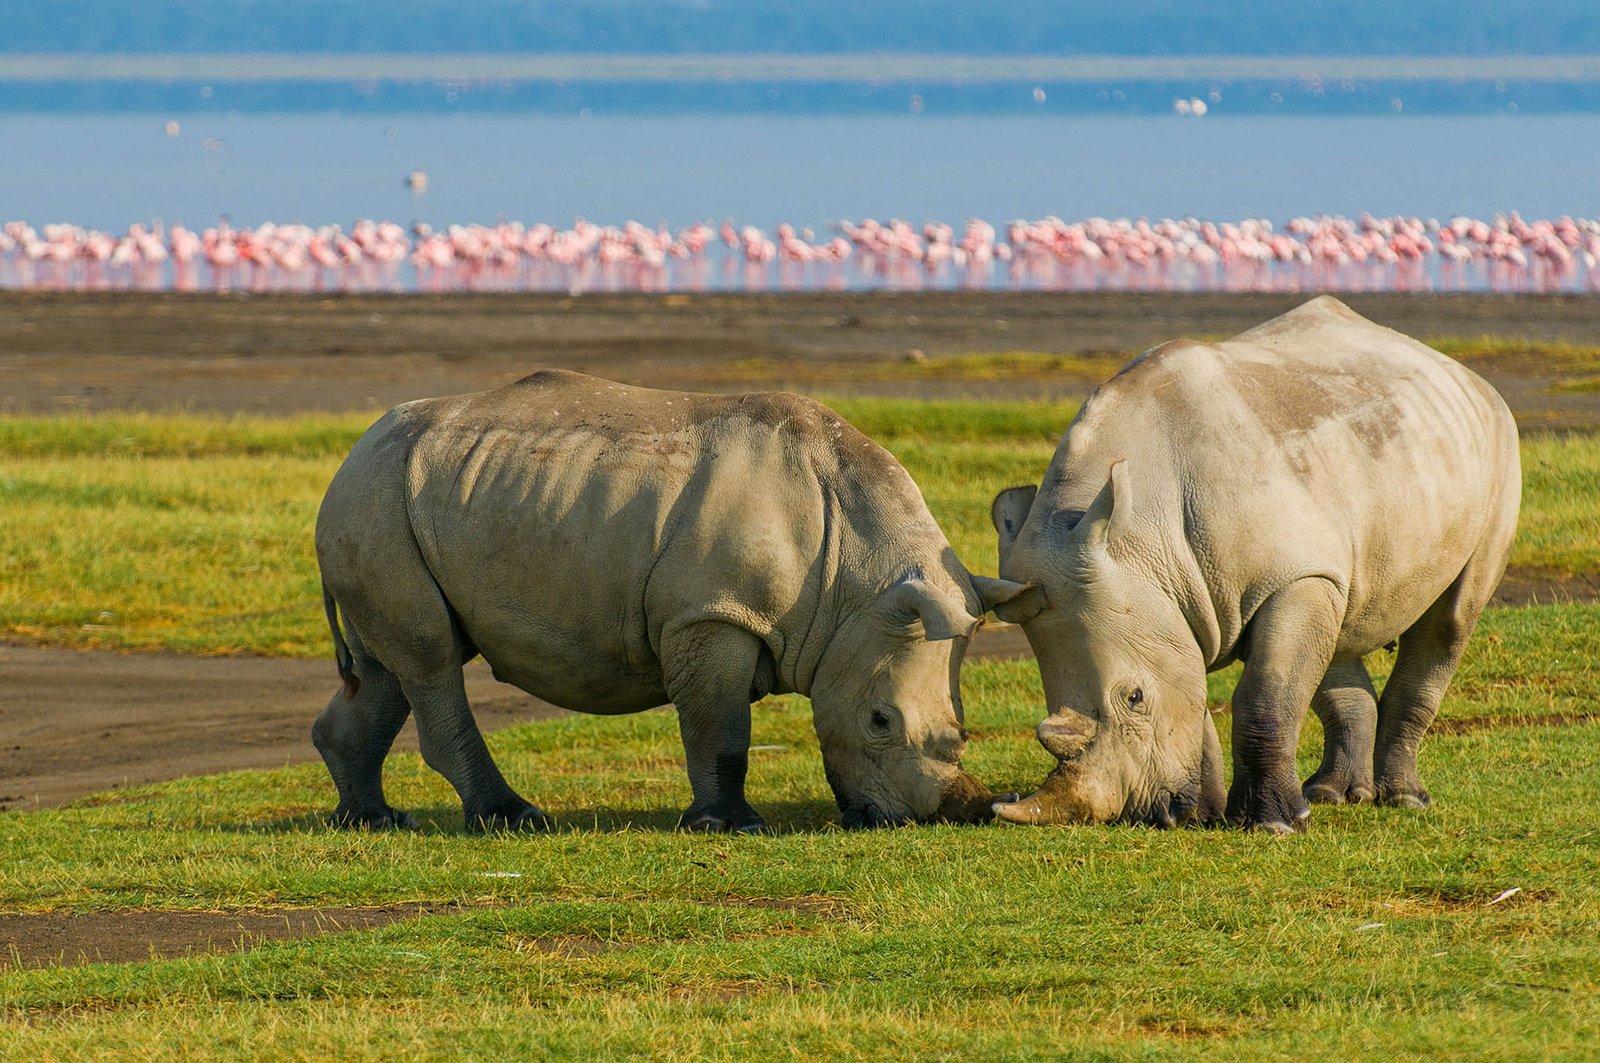 Rhino in Kenya.